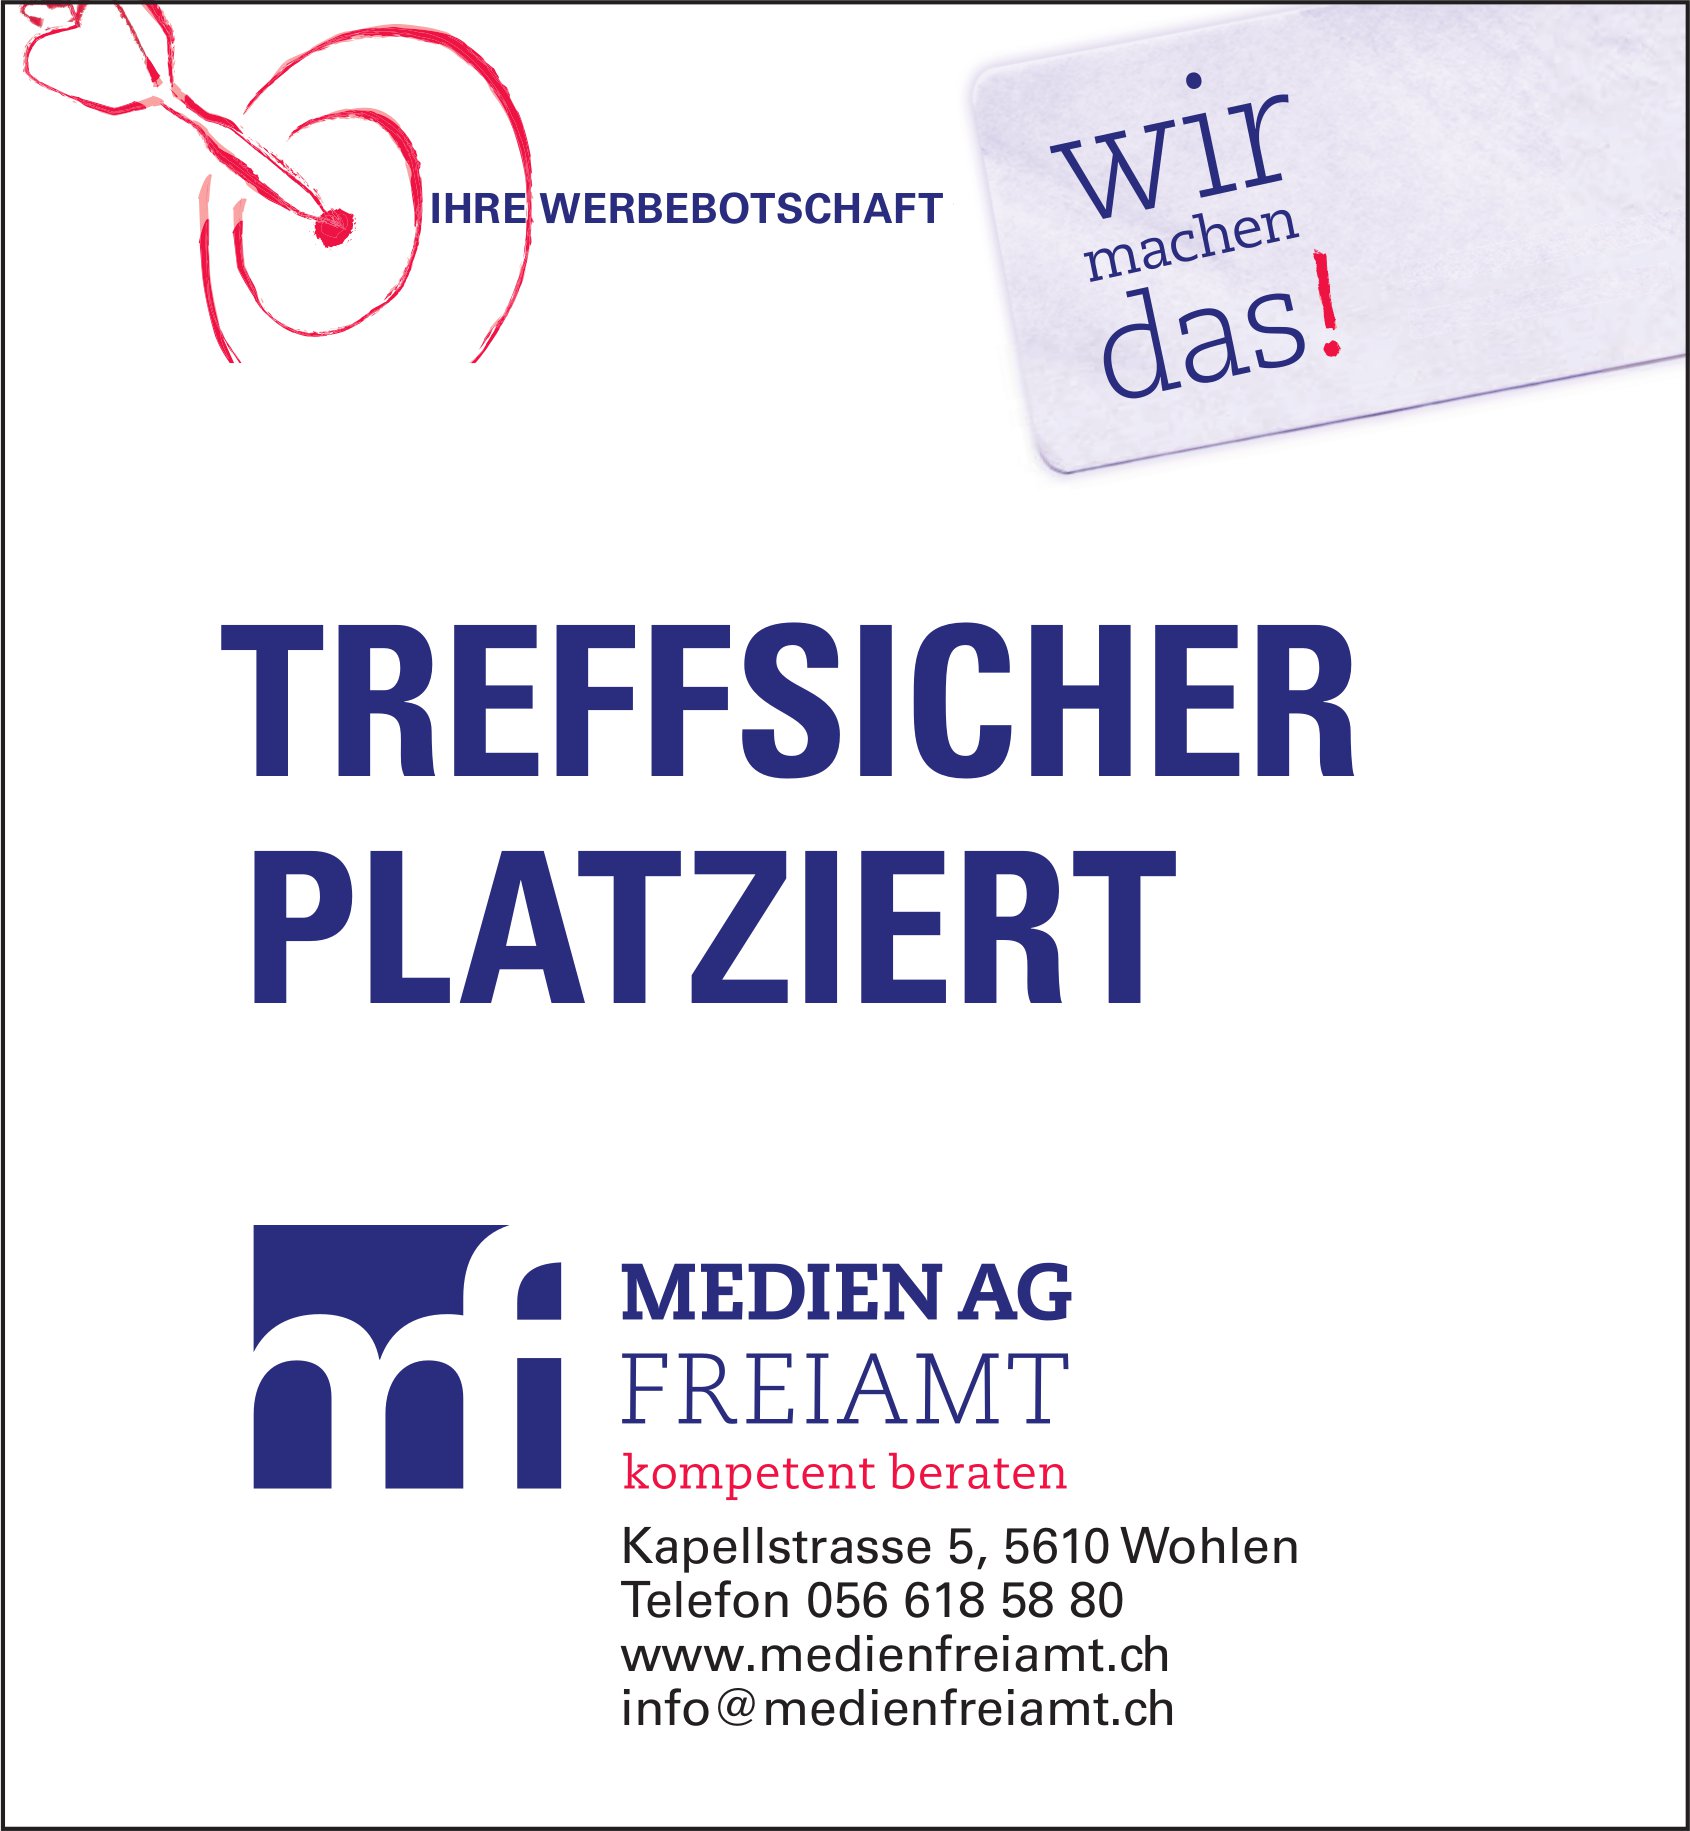 Medien AG Freiamt, Wohlen - Treffsicher platziert